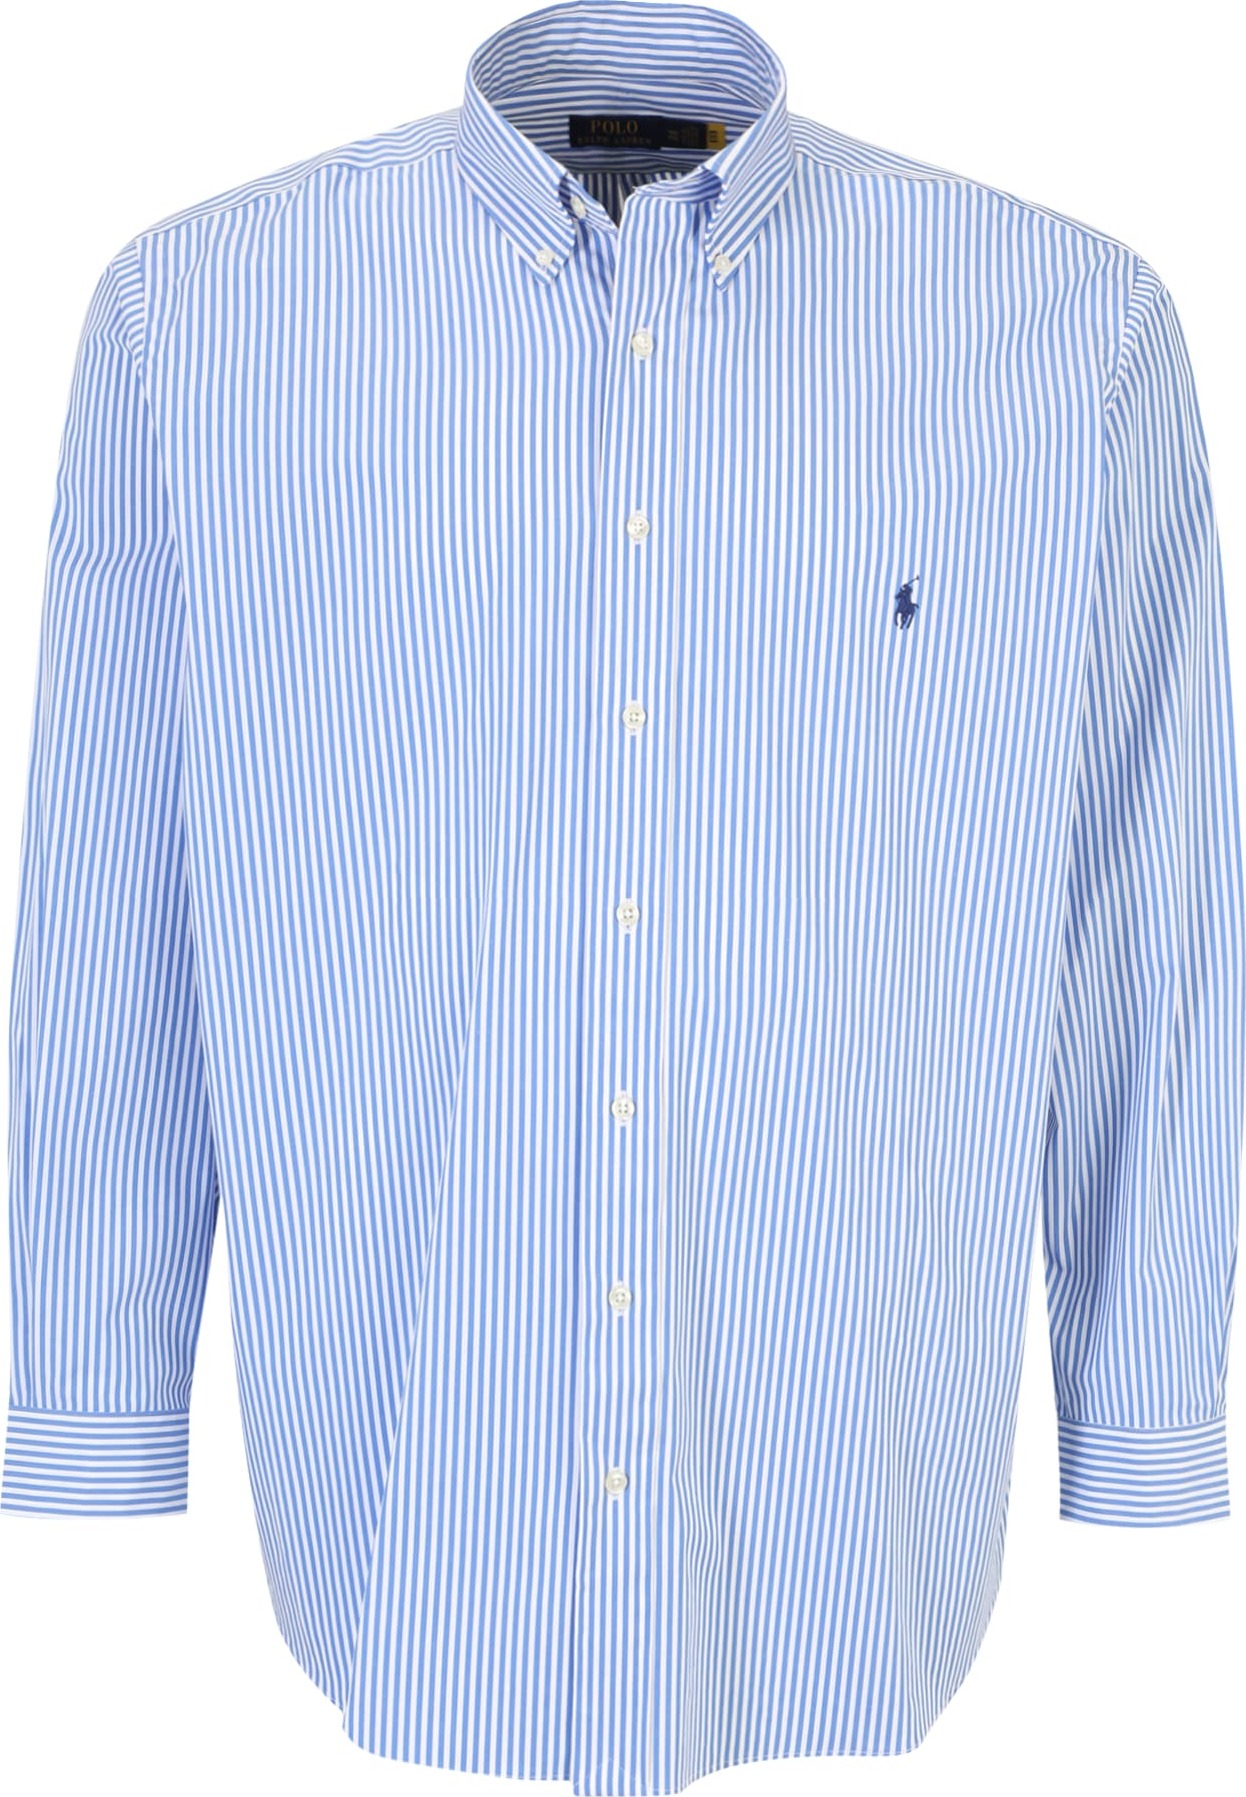 Polo Ralph Lauren Big & Tall Košile světlemodrá / bílá